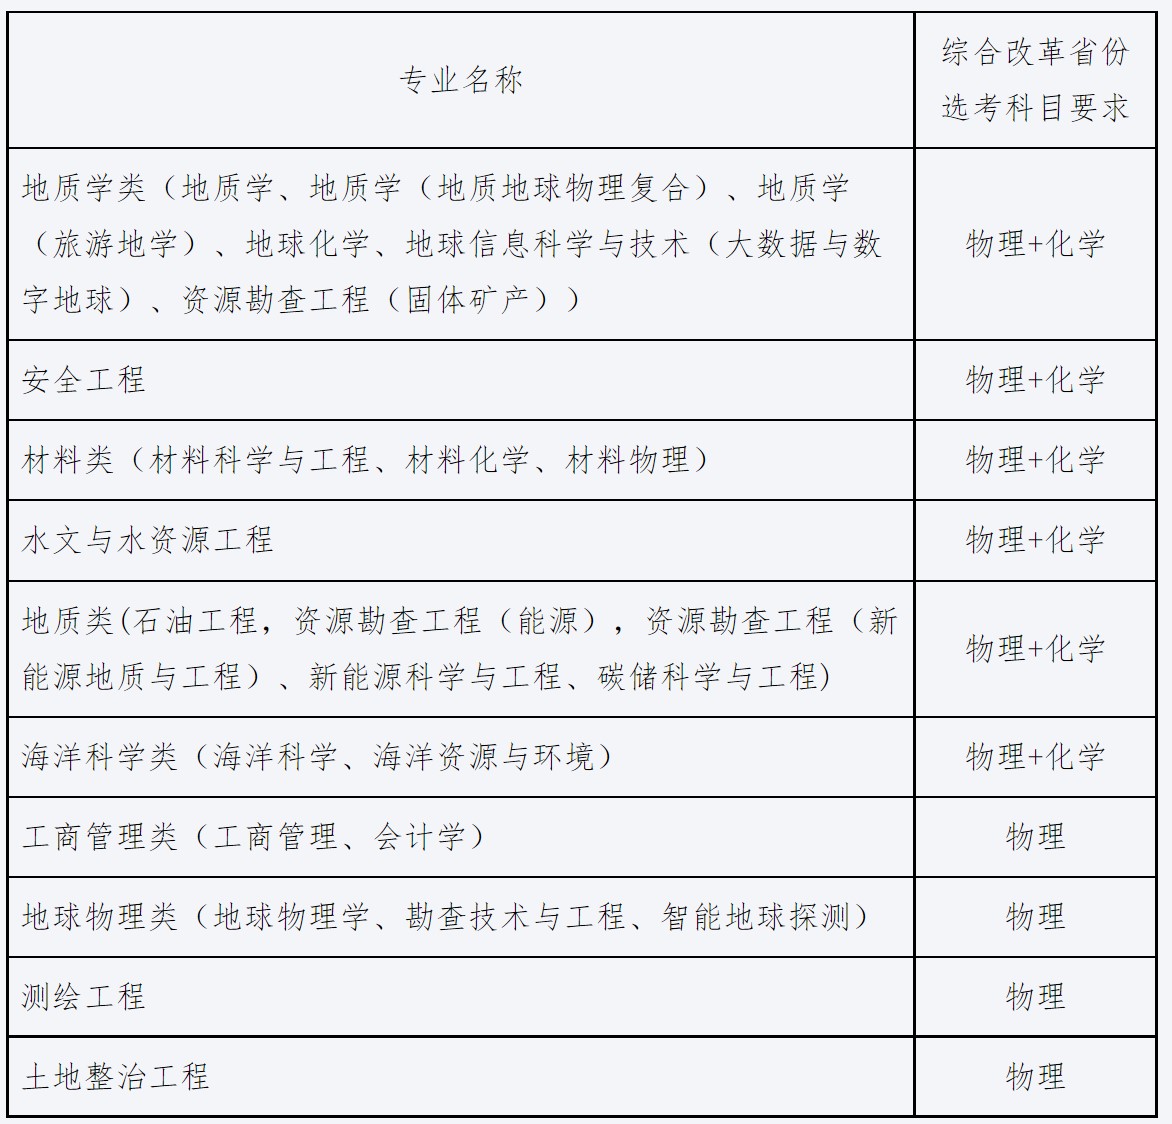 中国地质大学（北京）2022年高校专项计划招生简章